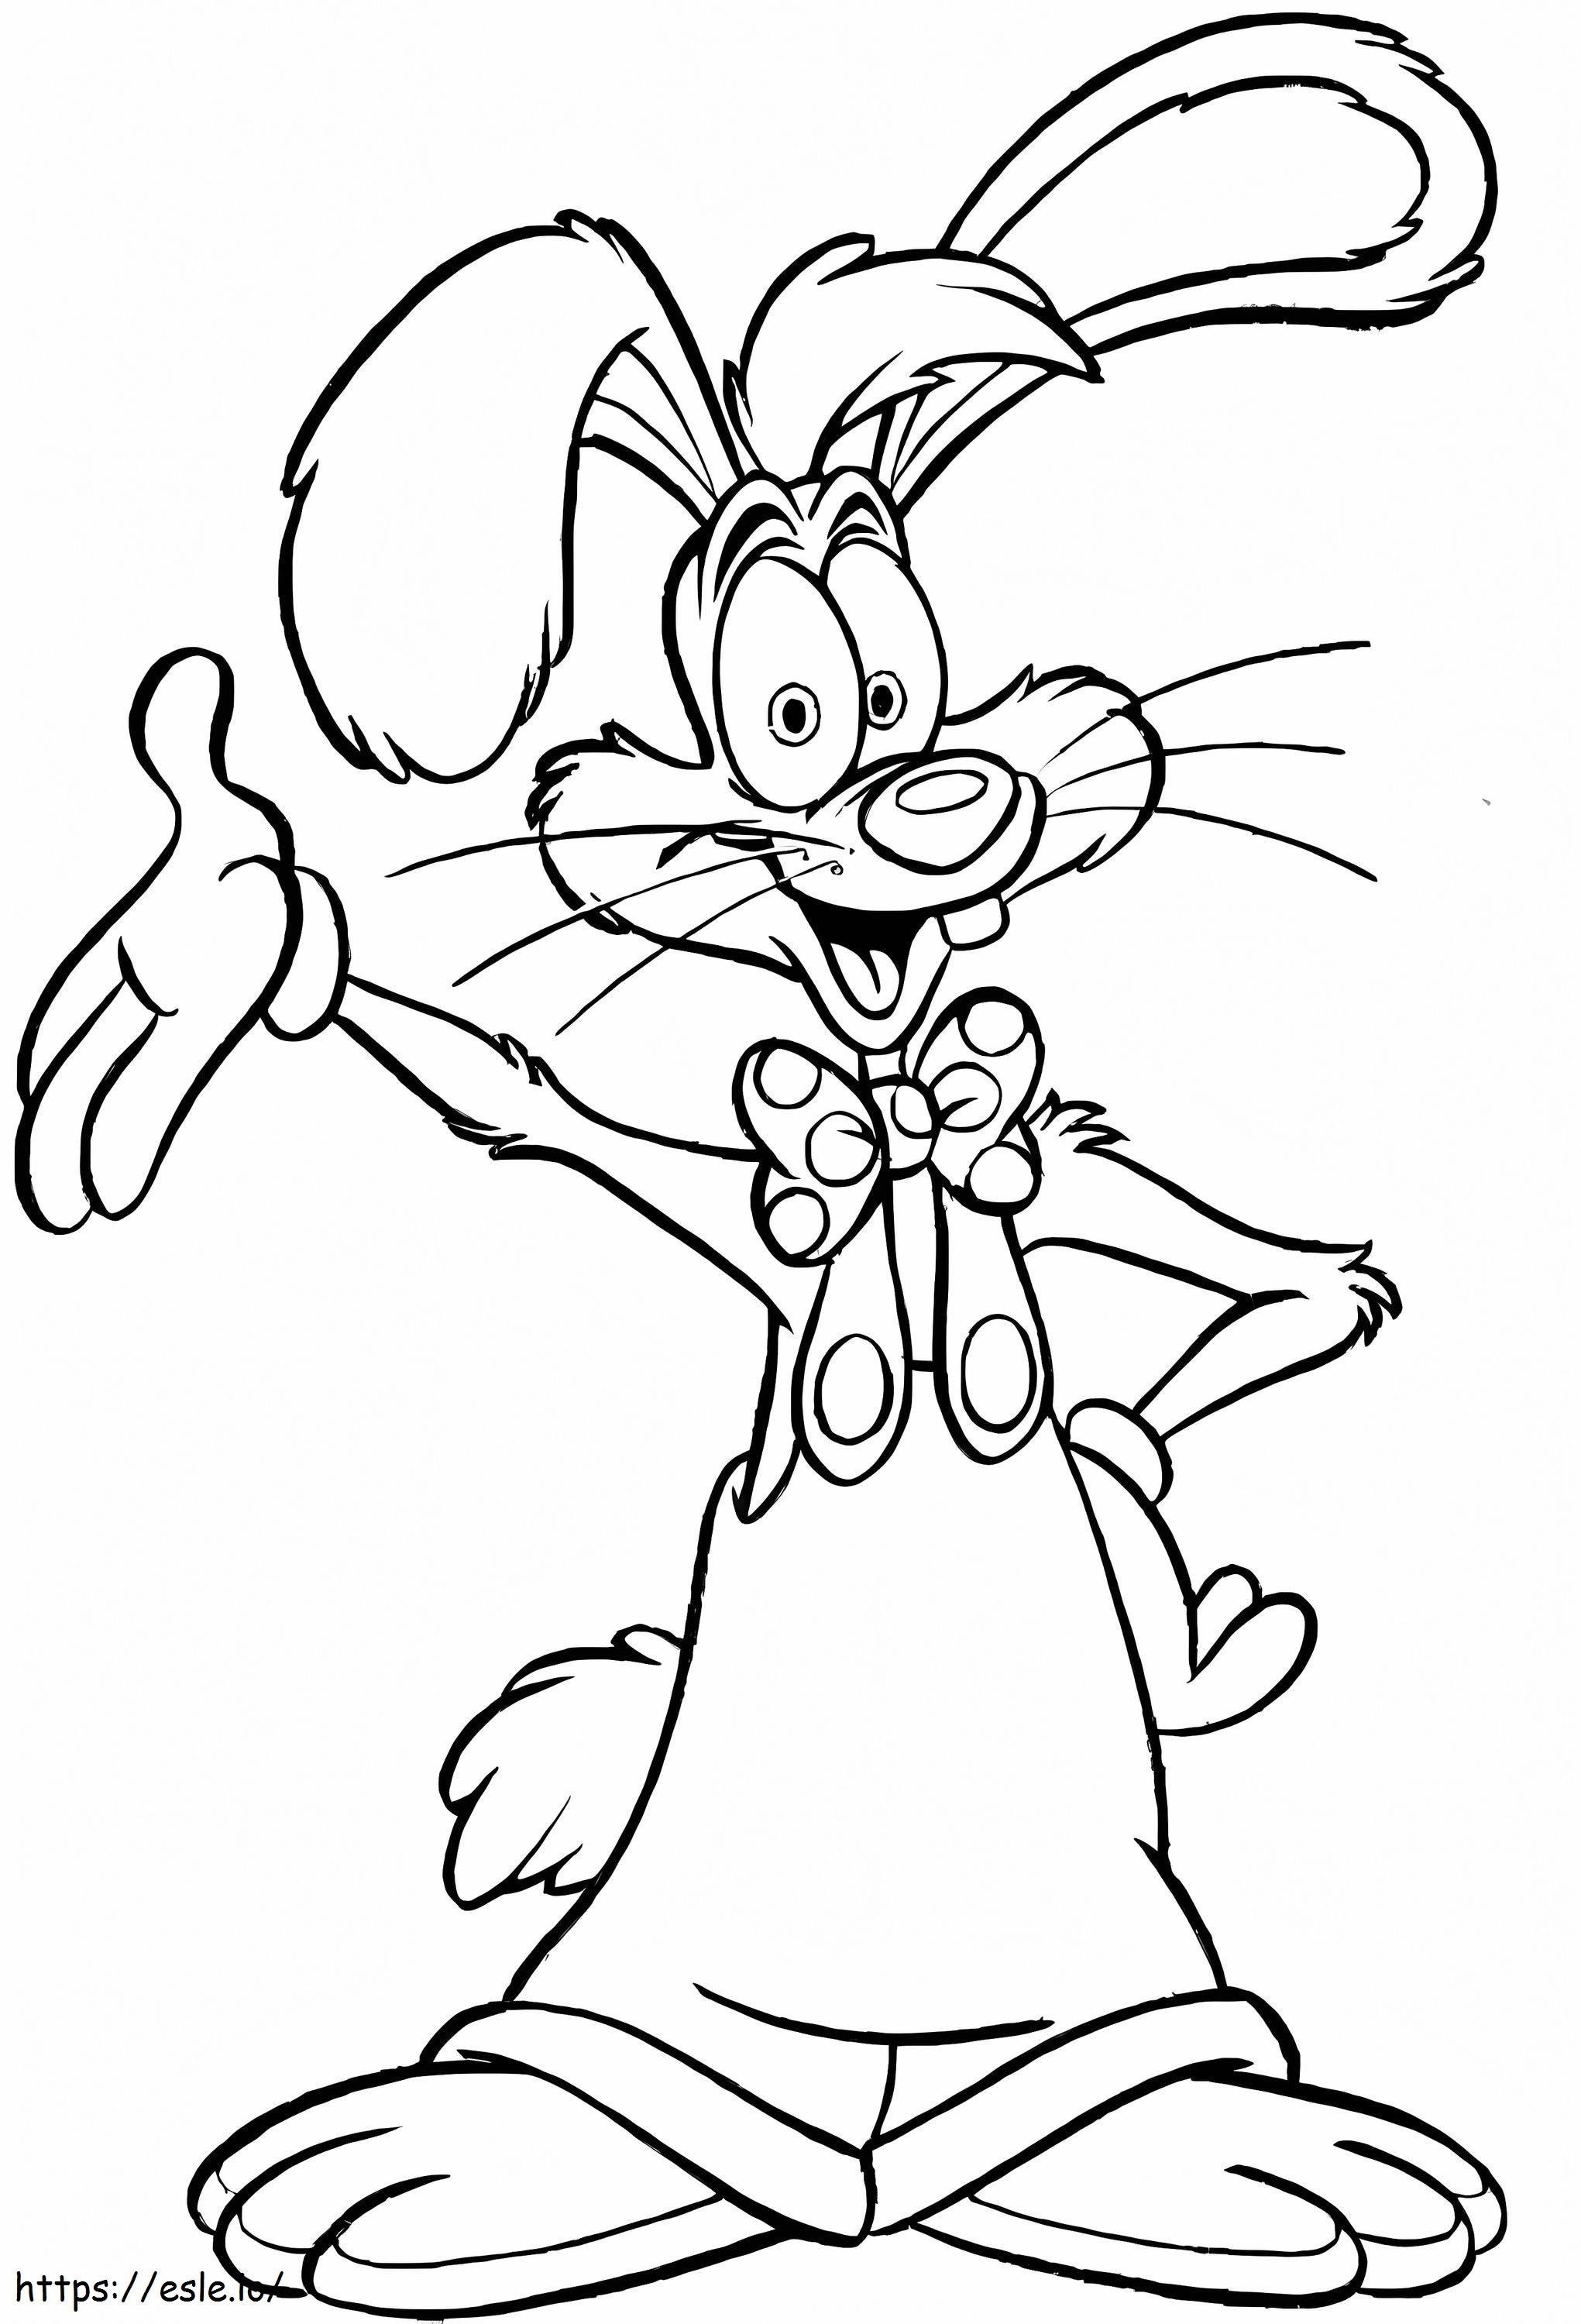 Mutlu Roger Tavşan boyama